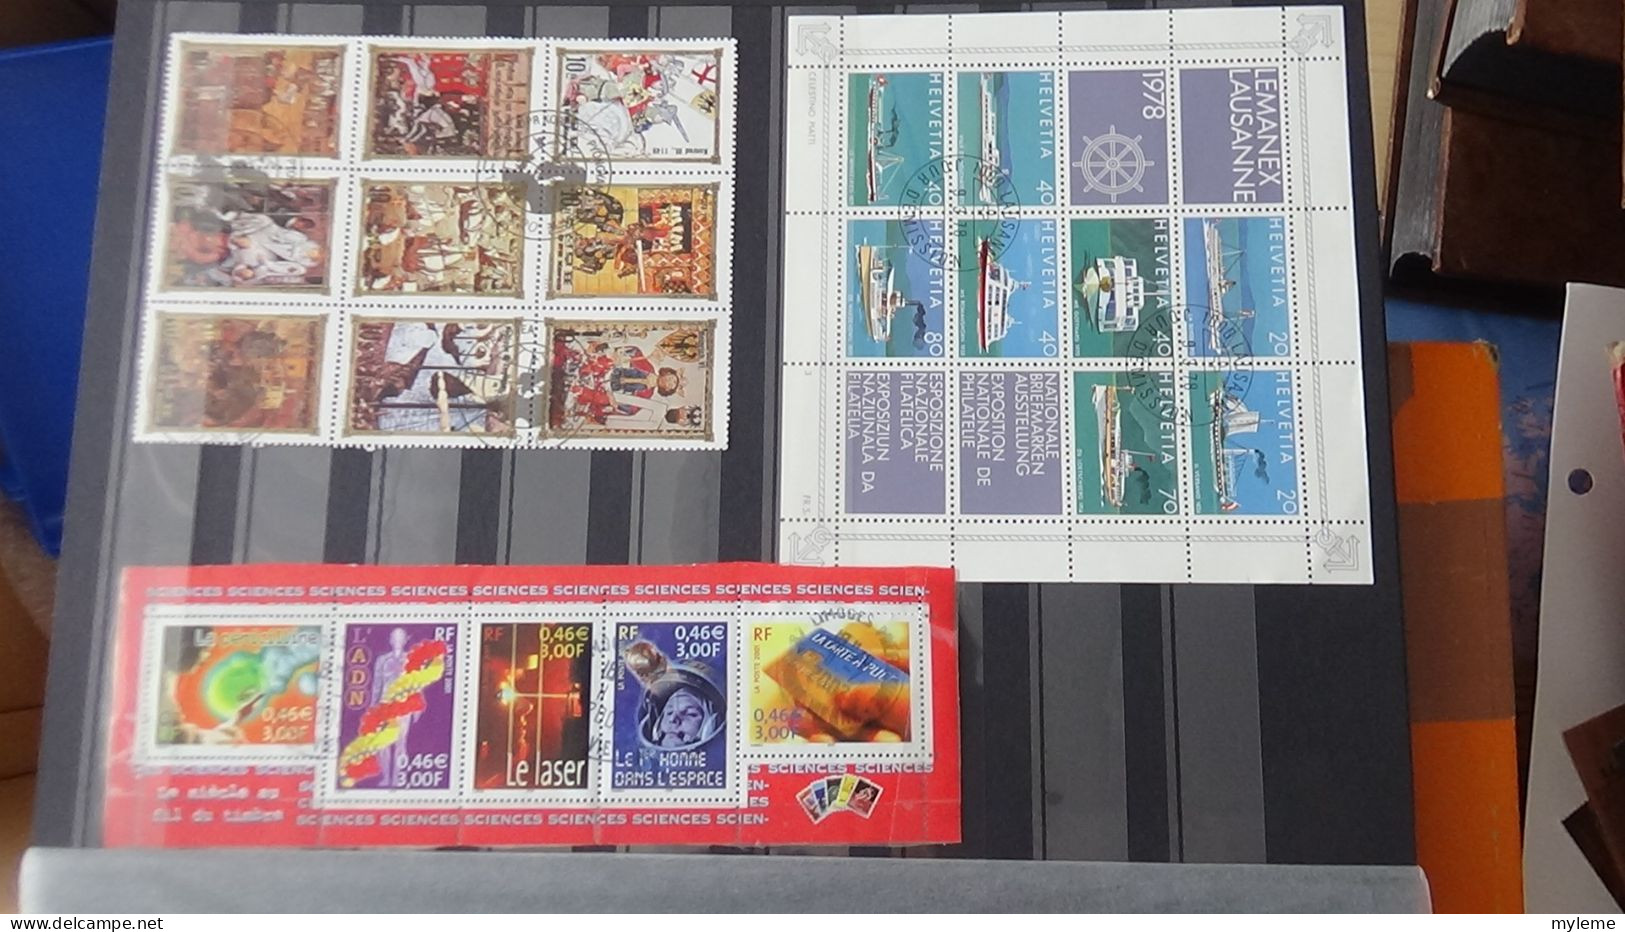 BF19 Ensemble de timbres et blocs oblitérés de divers pays + classiques de France ** avec petits défauts. Cote sympa !!!